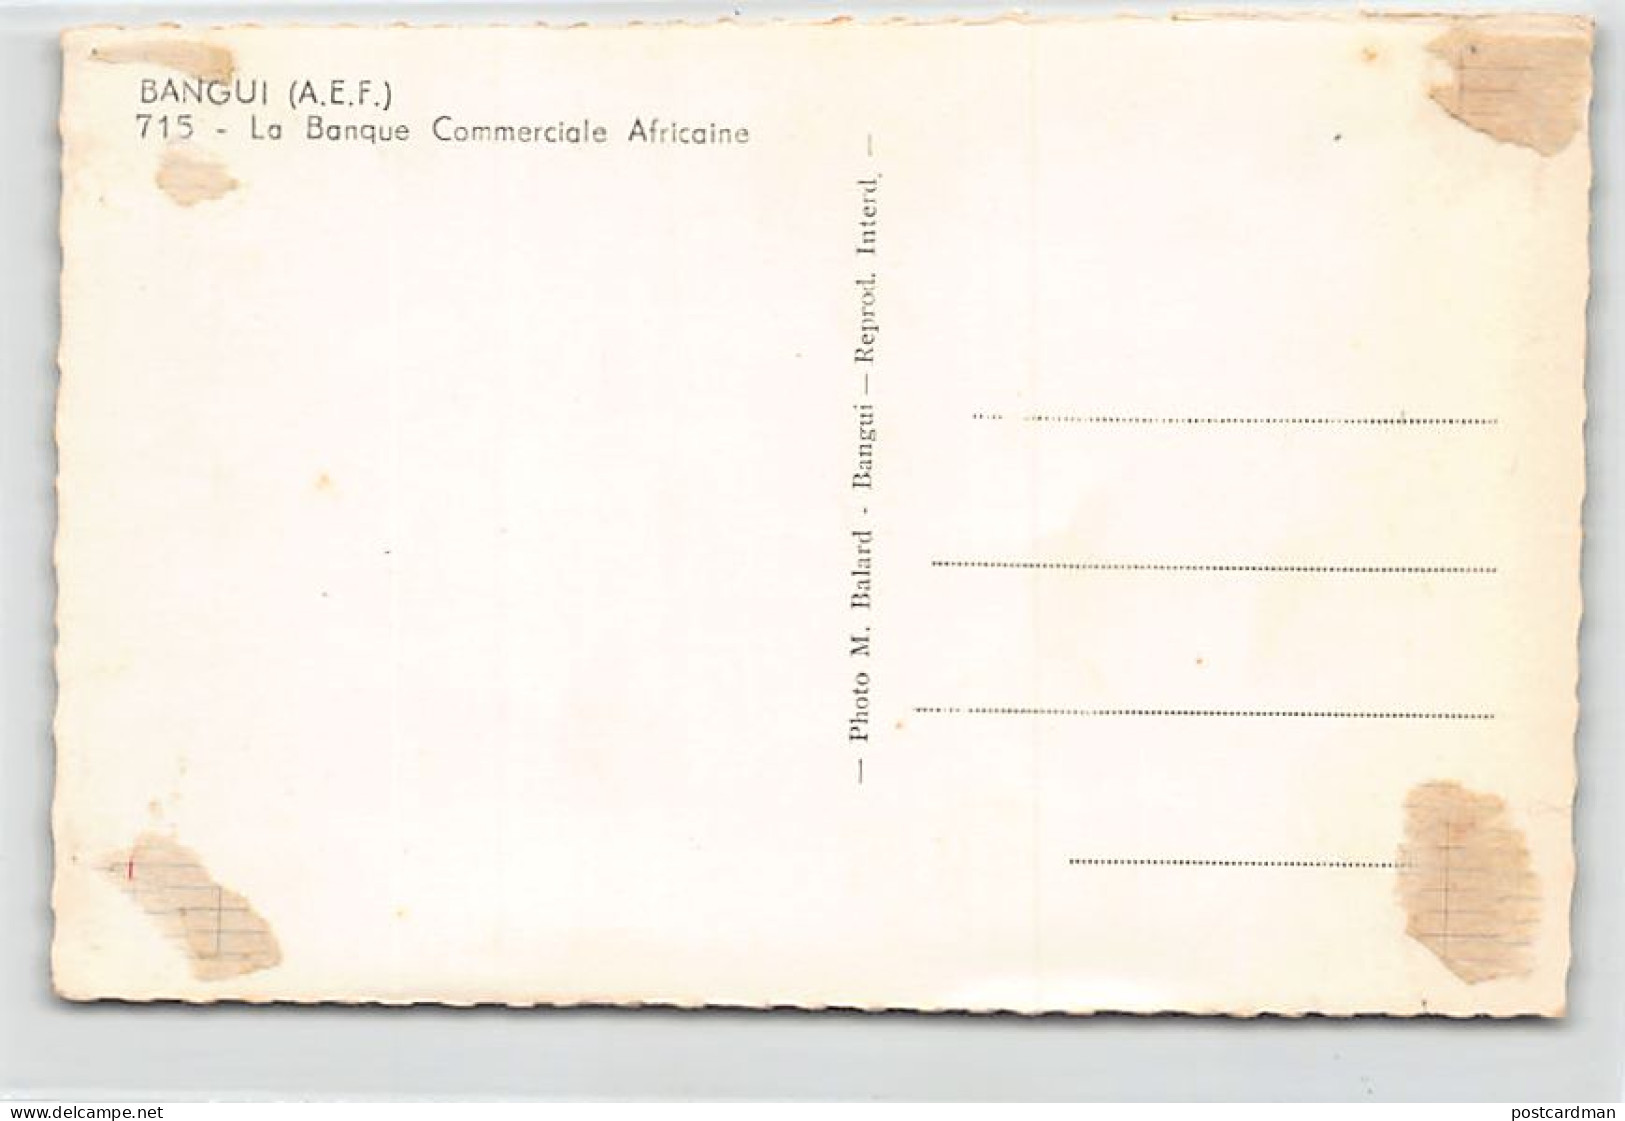 Centrafrique - BANGUI - La Banque Commerciale Africaine - Ed. M. Balard 715 - Zentralafrik. Republik